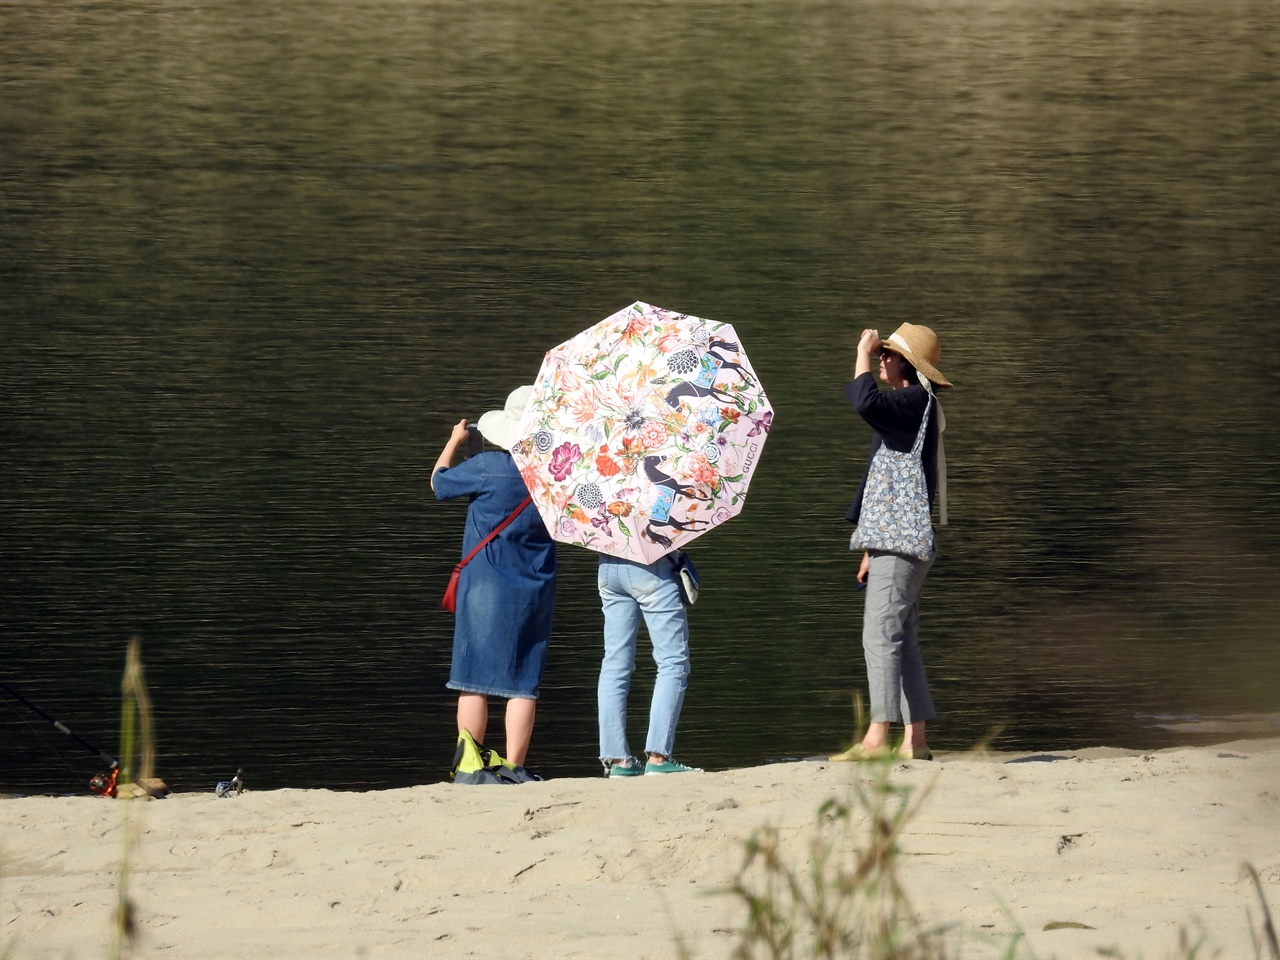  중년으로 보이는 여성들도 강변을 찾아 핸드폰으로 사진을 찍으면서 아름다운 자연을 감상했습니다.